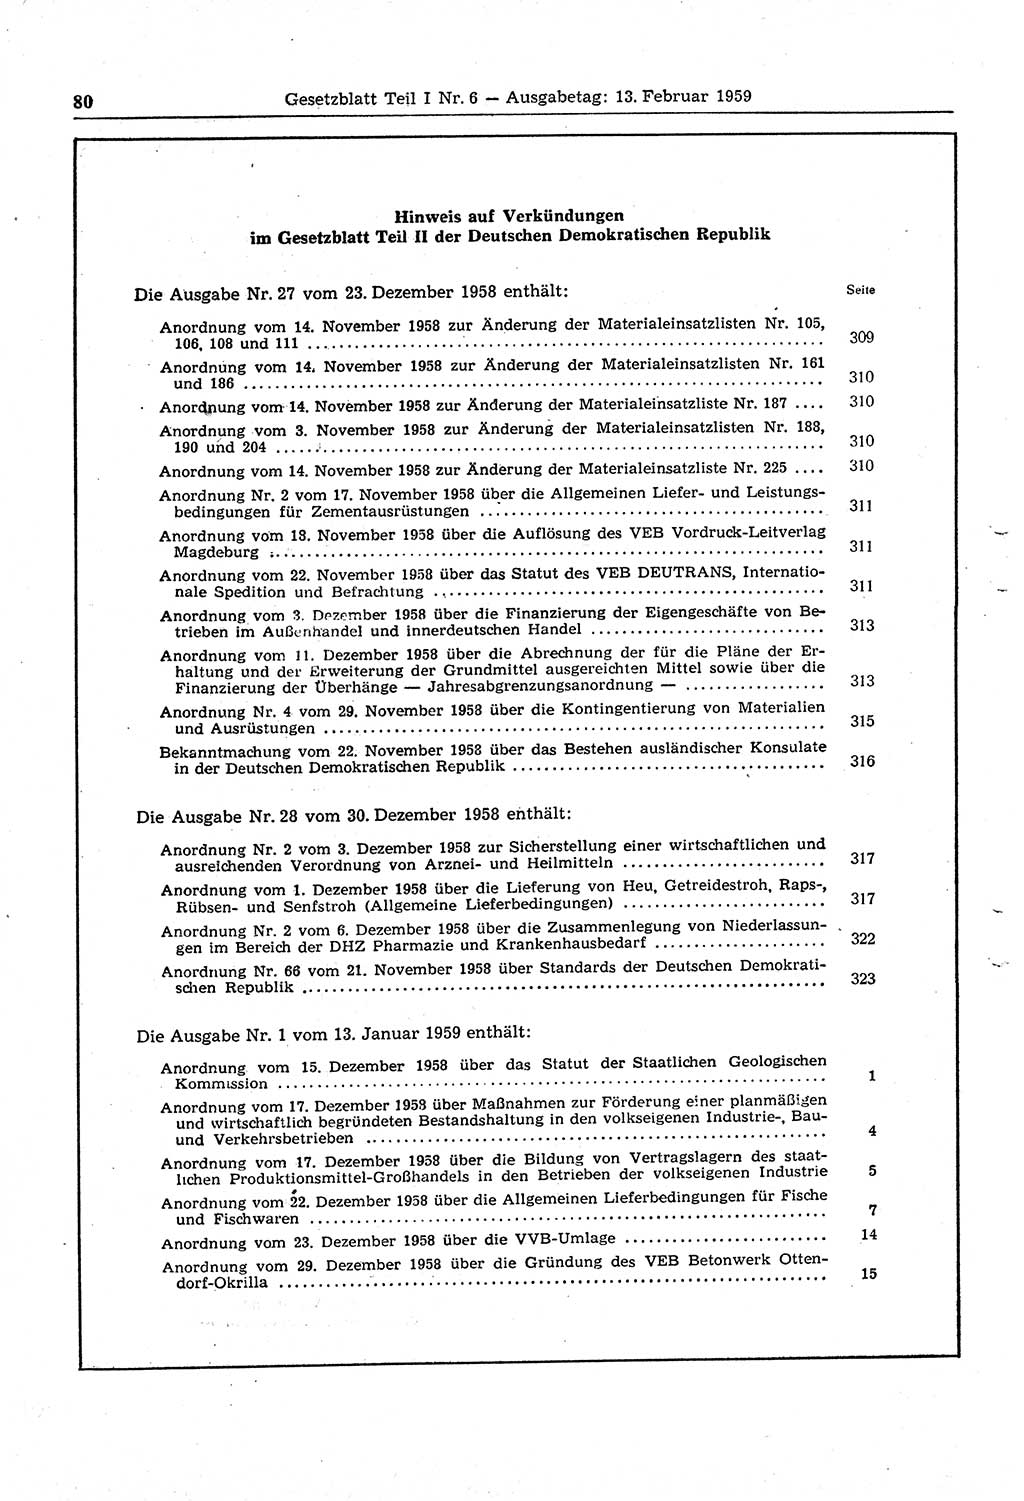 Gesetzblatt (GBl.) der Deutschen Demokratischen Republik (DDR) Teil Ⅰ 1959, Seite 80 (GBl. DDR Ⅰ 1959, S. 80)